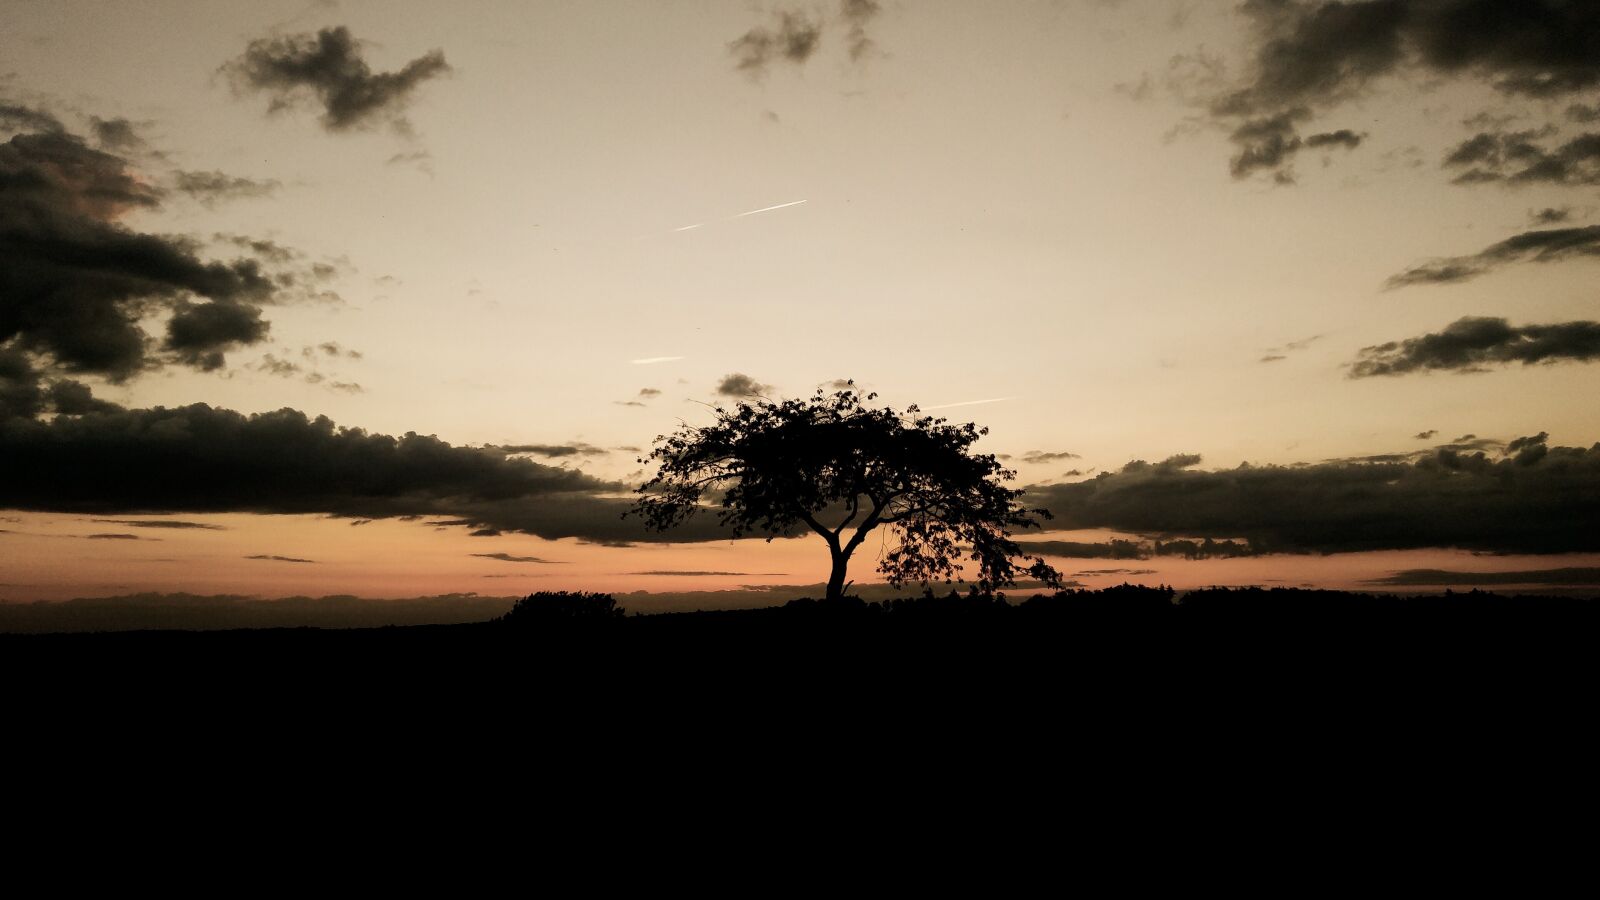 LG K10 sample photo. Mood, tree, sunset photography